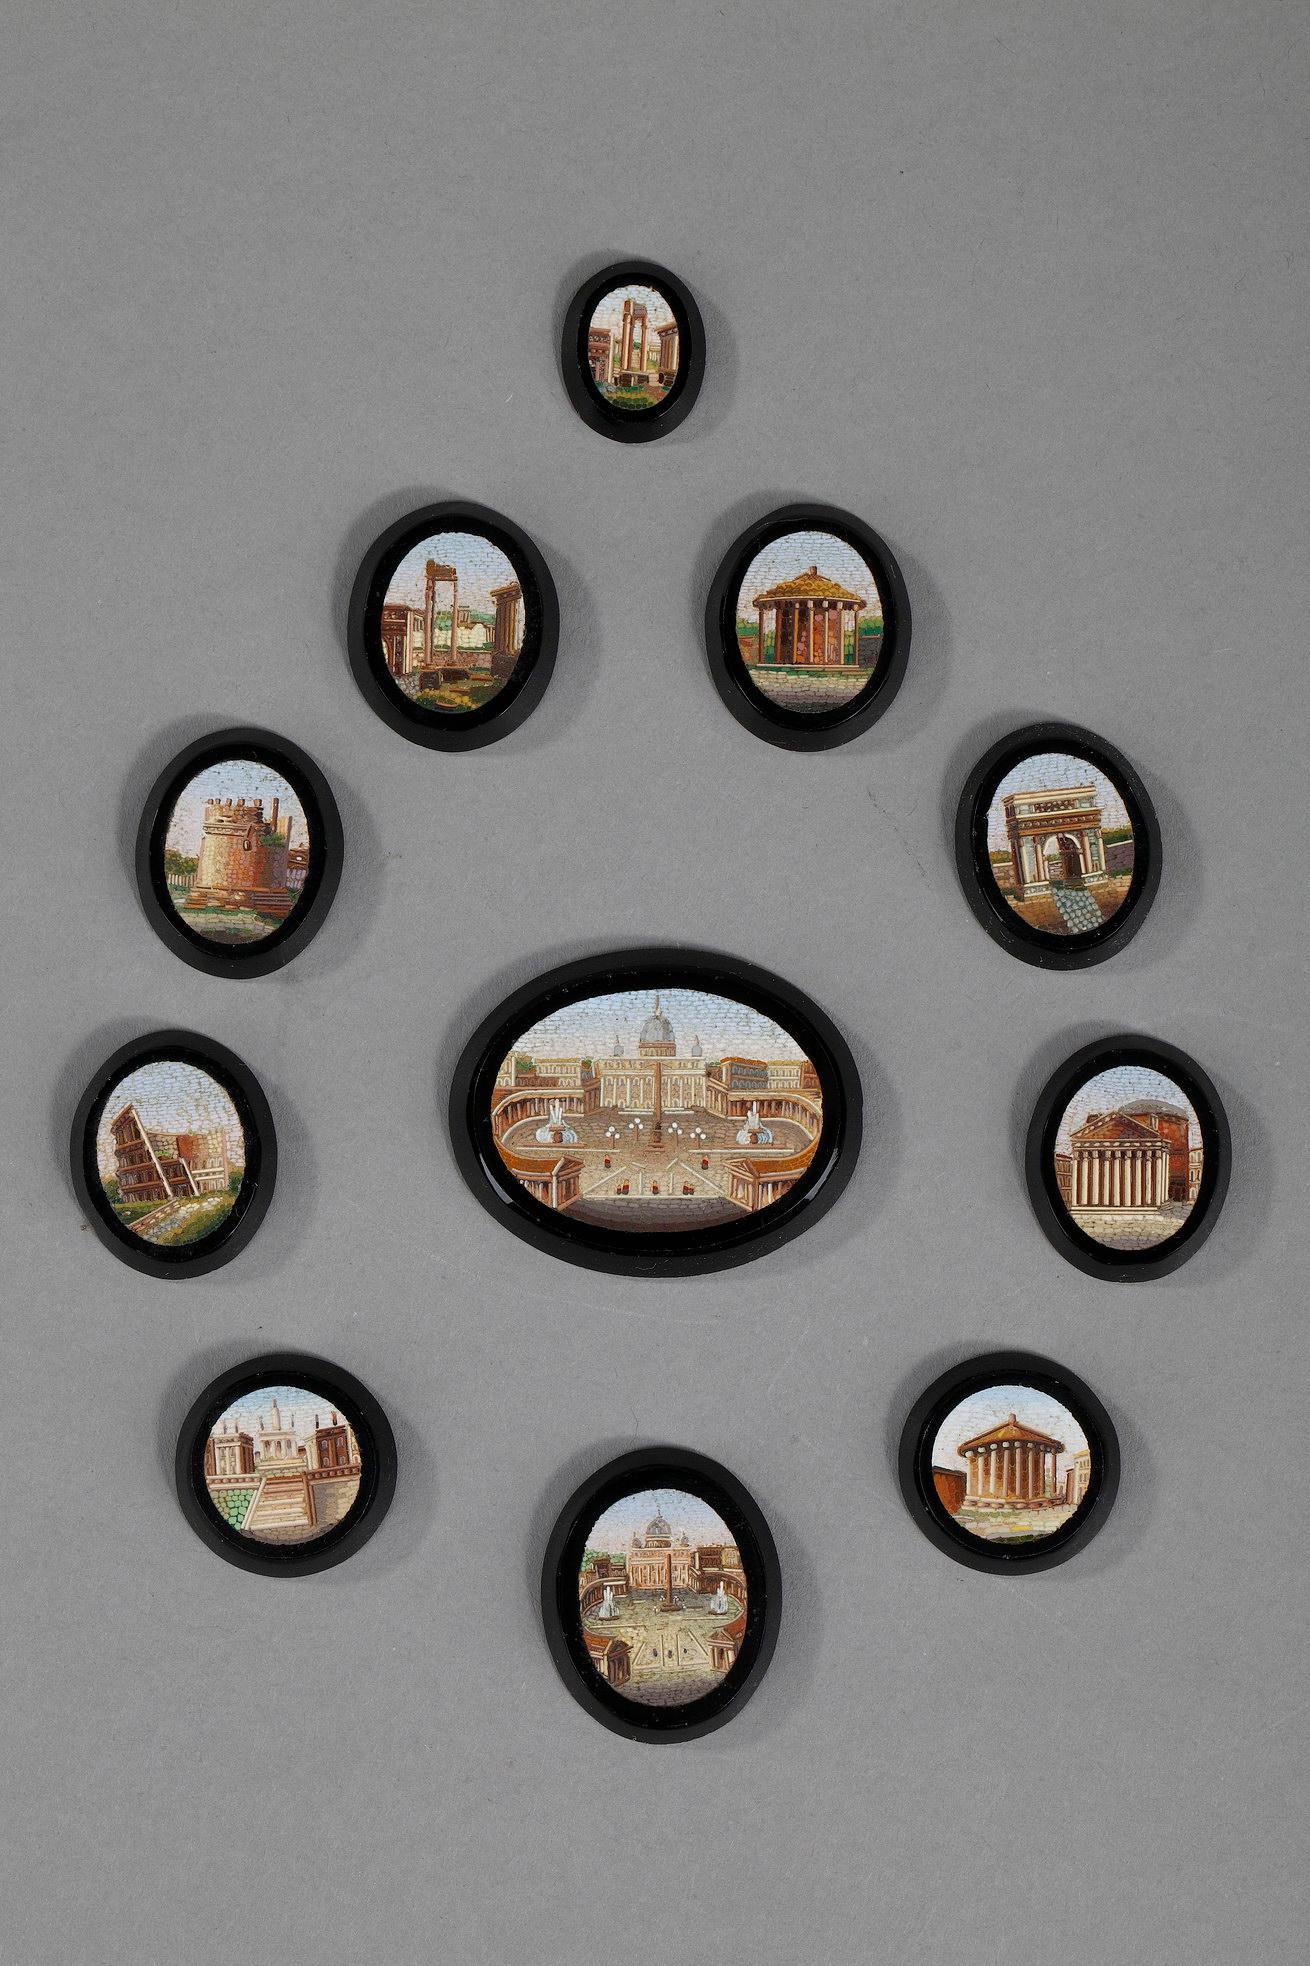 Satz von 11 Empire-Mikromosaiken auf schwarzem Stein, rund, oval oder tropfenförmig. Sie stellen römische Gebäude wie das Pantheon, den Vesta-Tempel oder Saint-Pierre dar. 

Abmessung des größten: 4,4cm x 3,5cm x 0,4cm
Abmessung der mittleren: 2,7cm